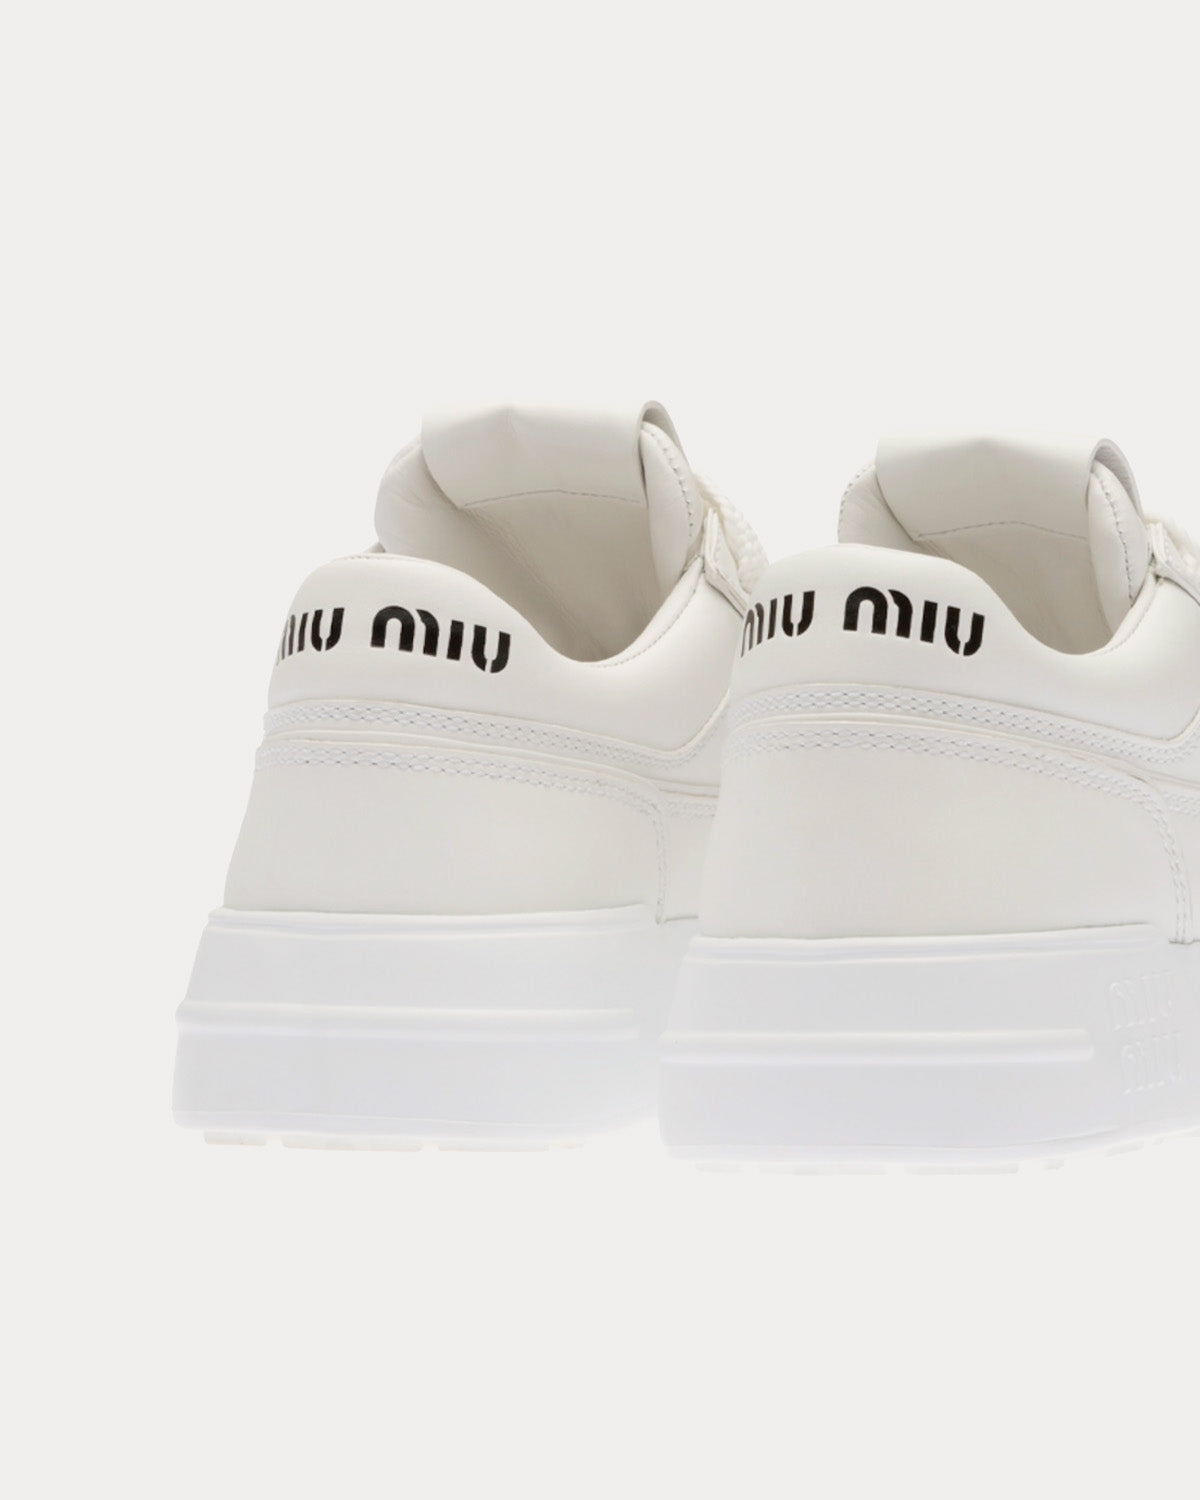 Miu Miu Leather White Low Top Sneakers - Sneak in Peace